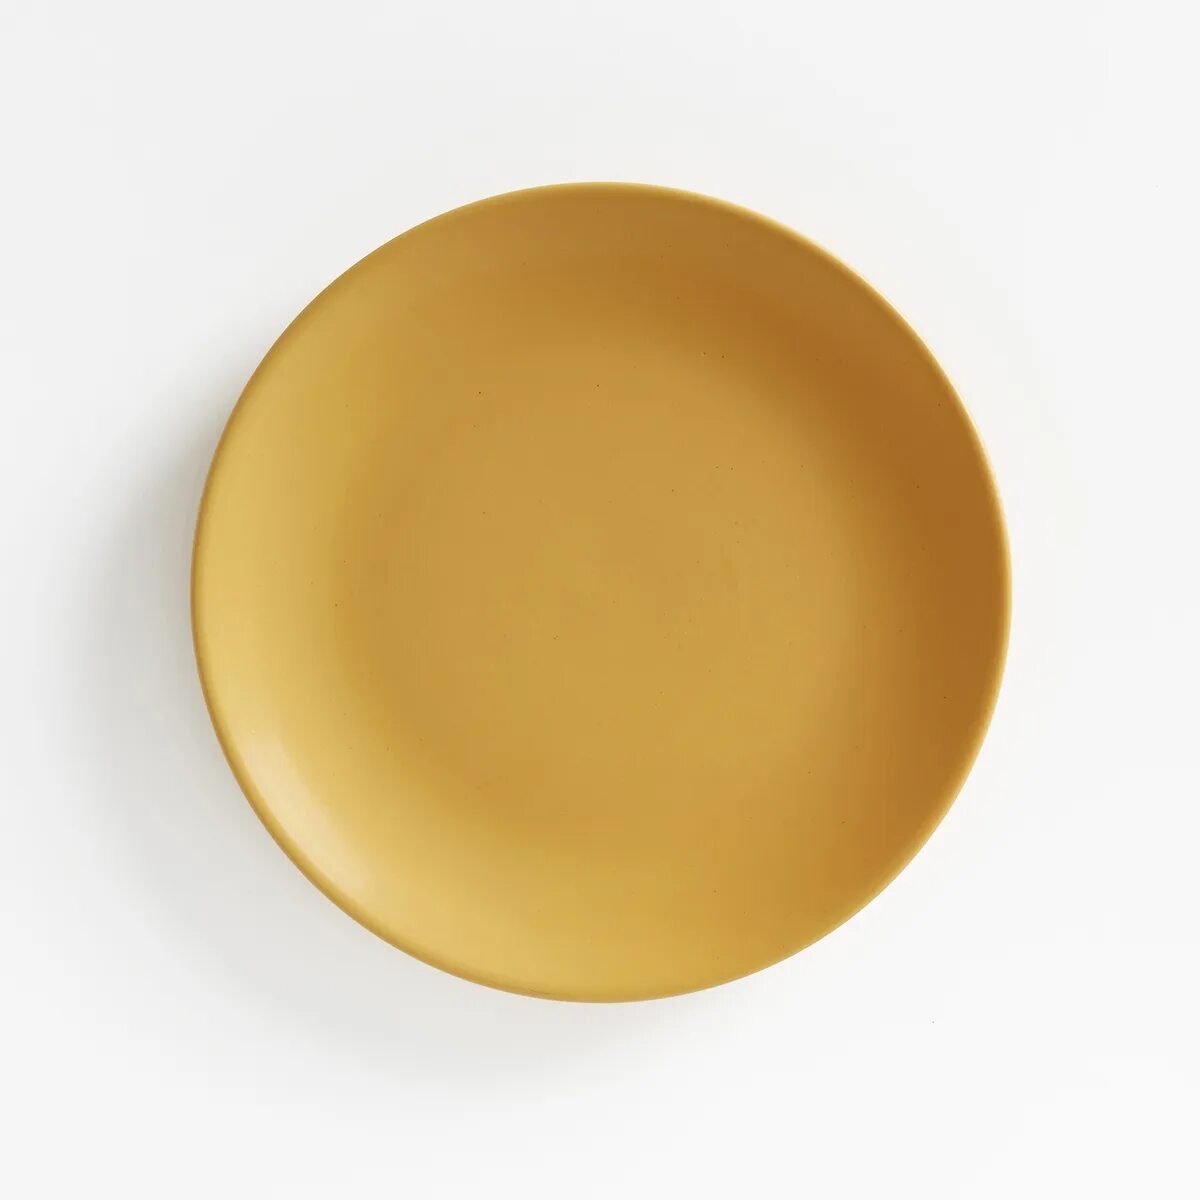 La Redoute тарелки. Матовые тарелки. Желтая десертная тарелка. Тарелка желтая матовая. Тарелка матовая